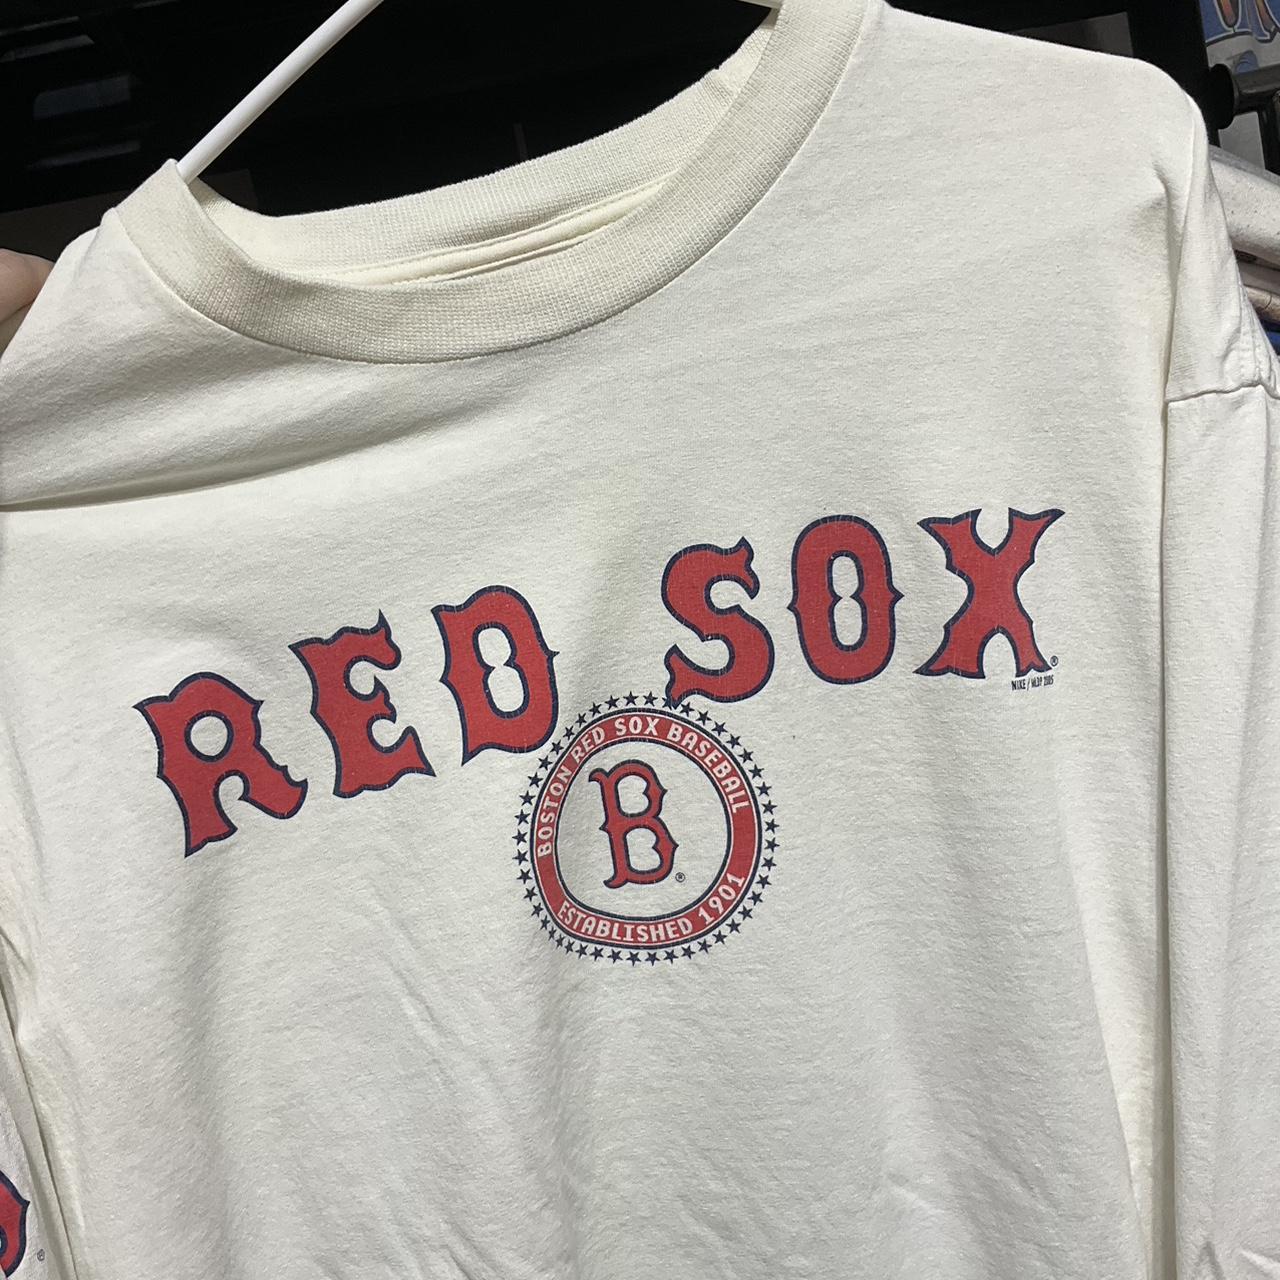 Vintage Nike Boston Red Sox tshirt. Vintage red - Depop